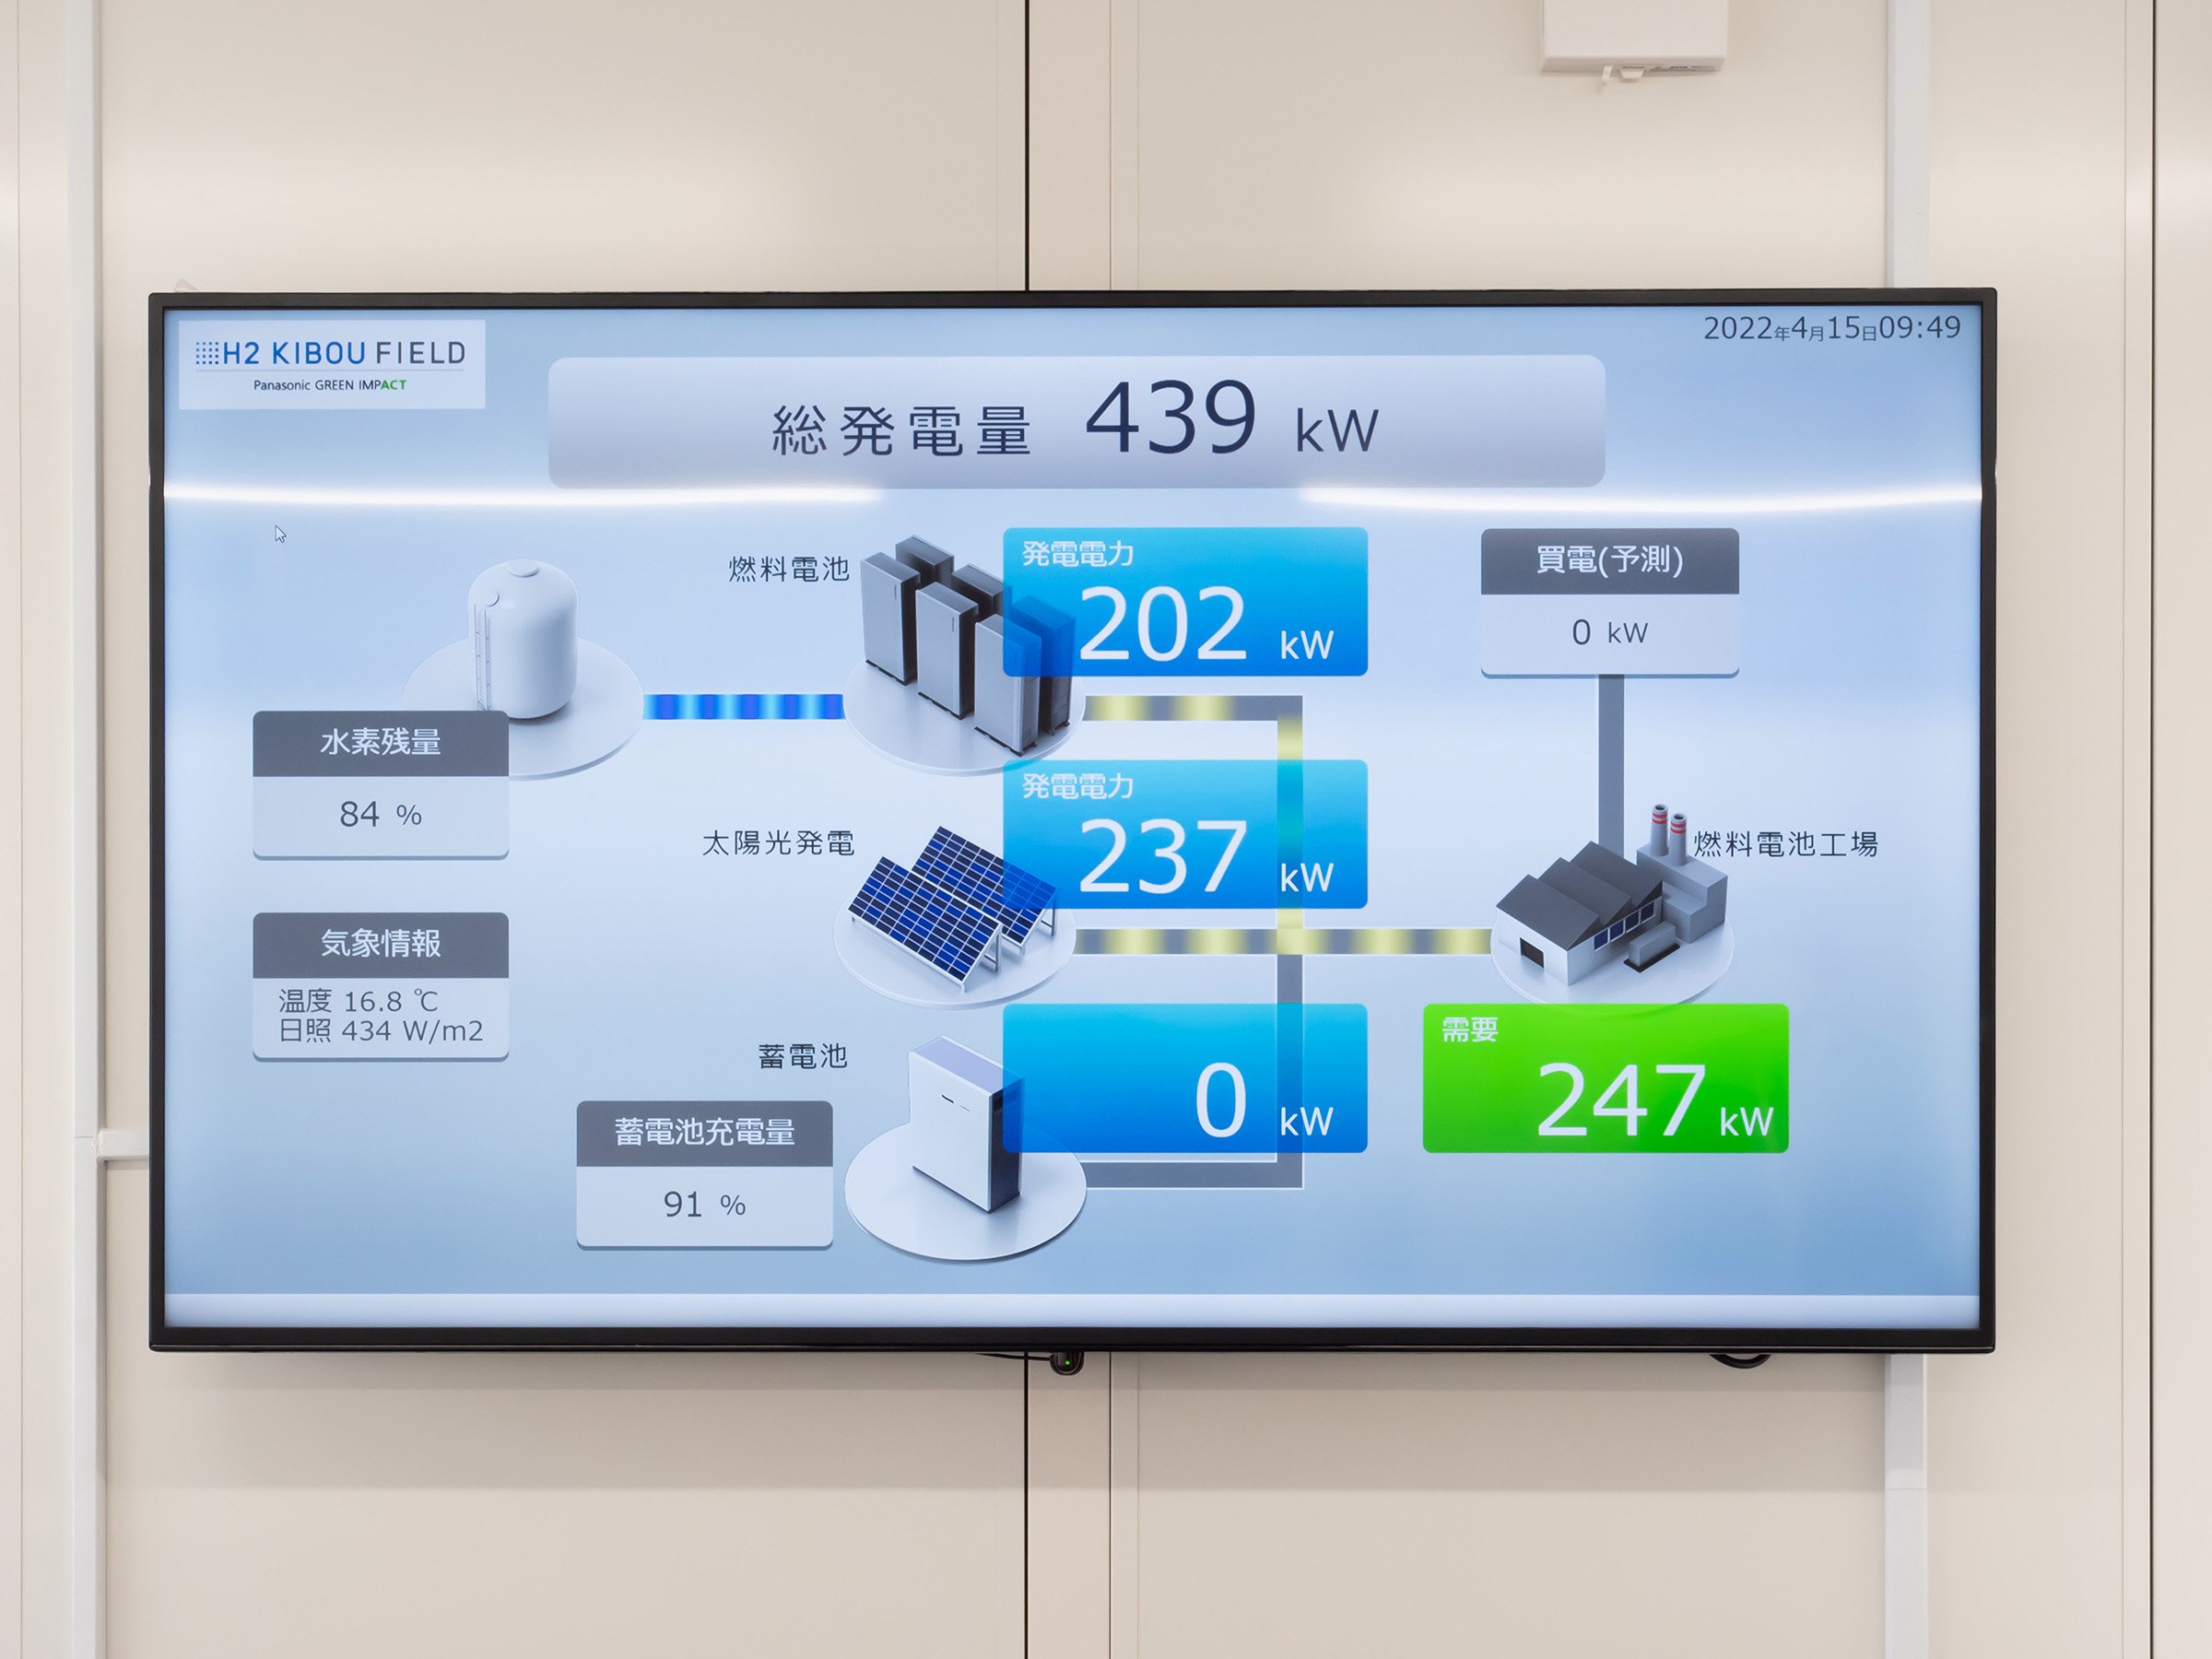 写真：草津拠点内にある燃料電池工場の製造部門の全使用電力を表示するモニター画面